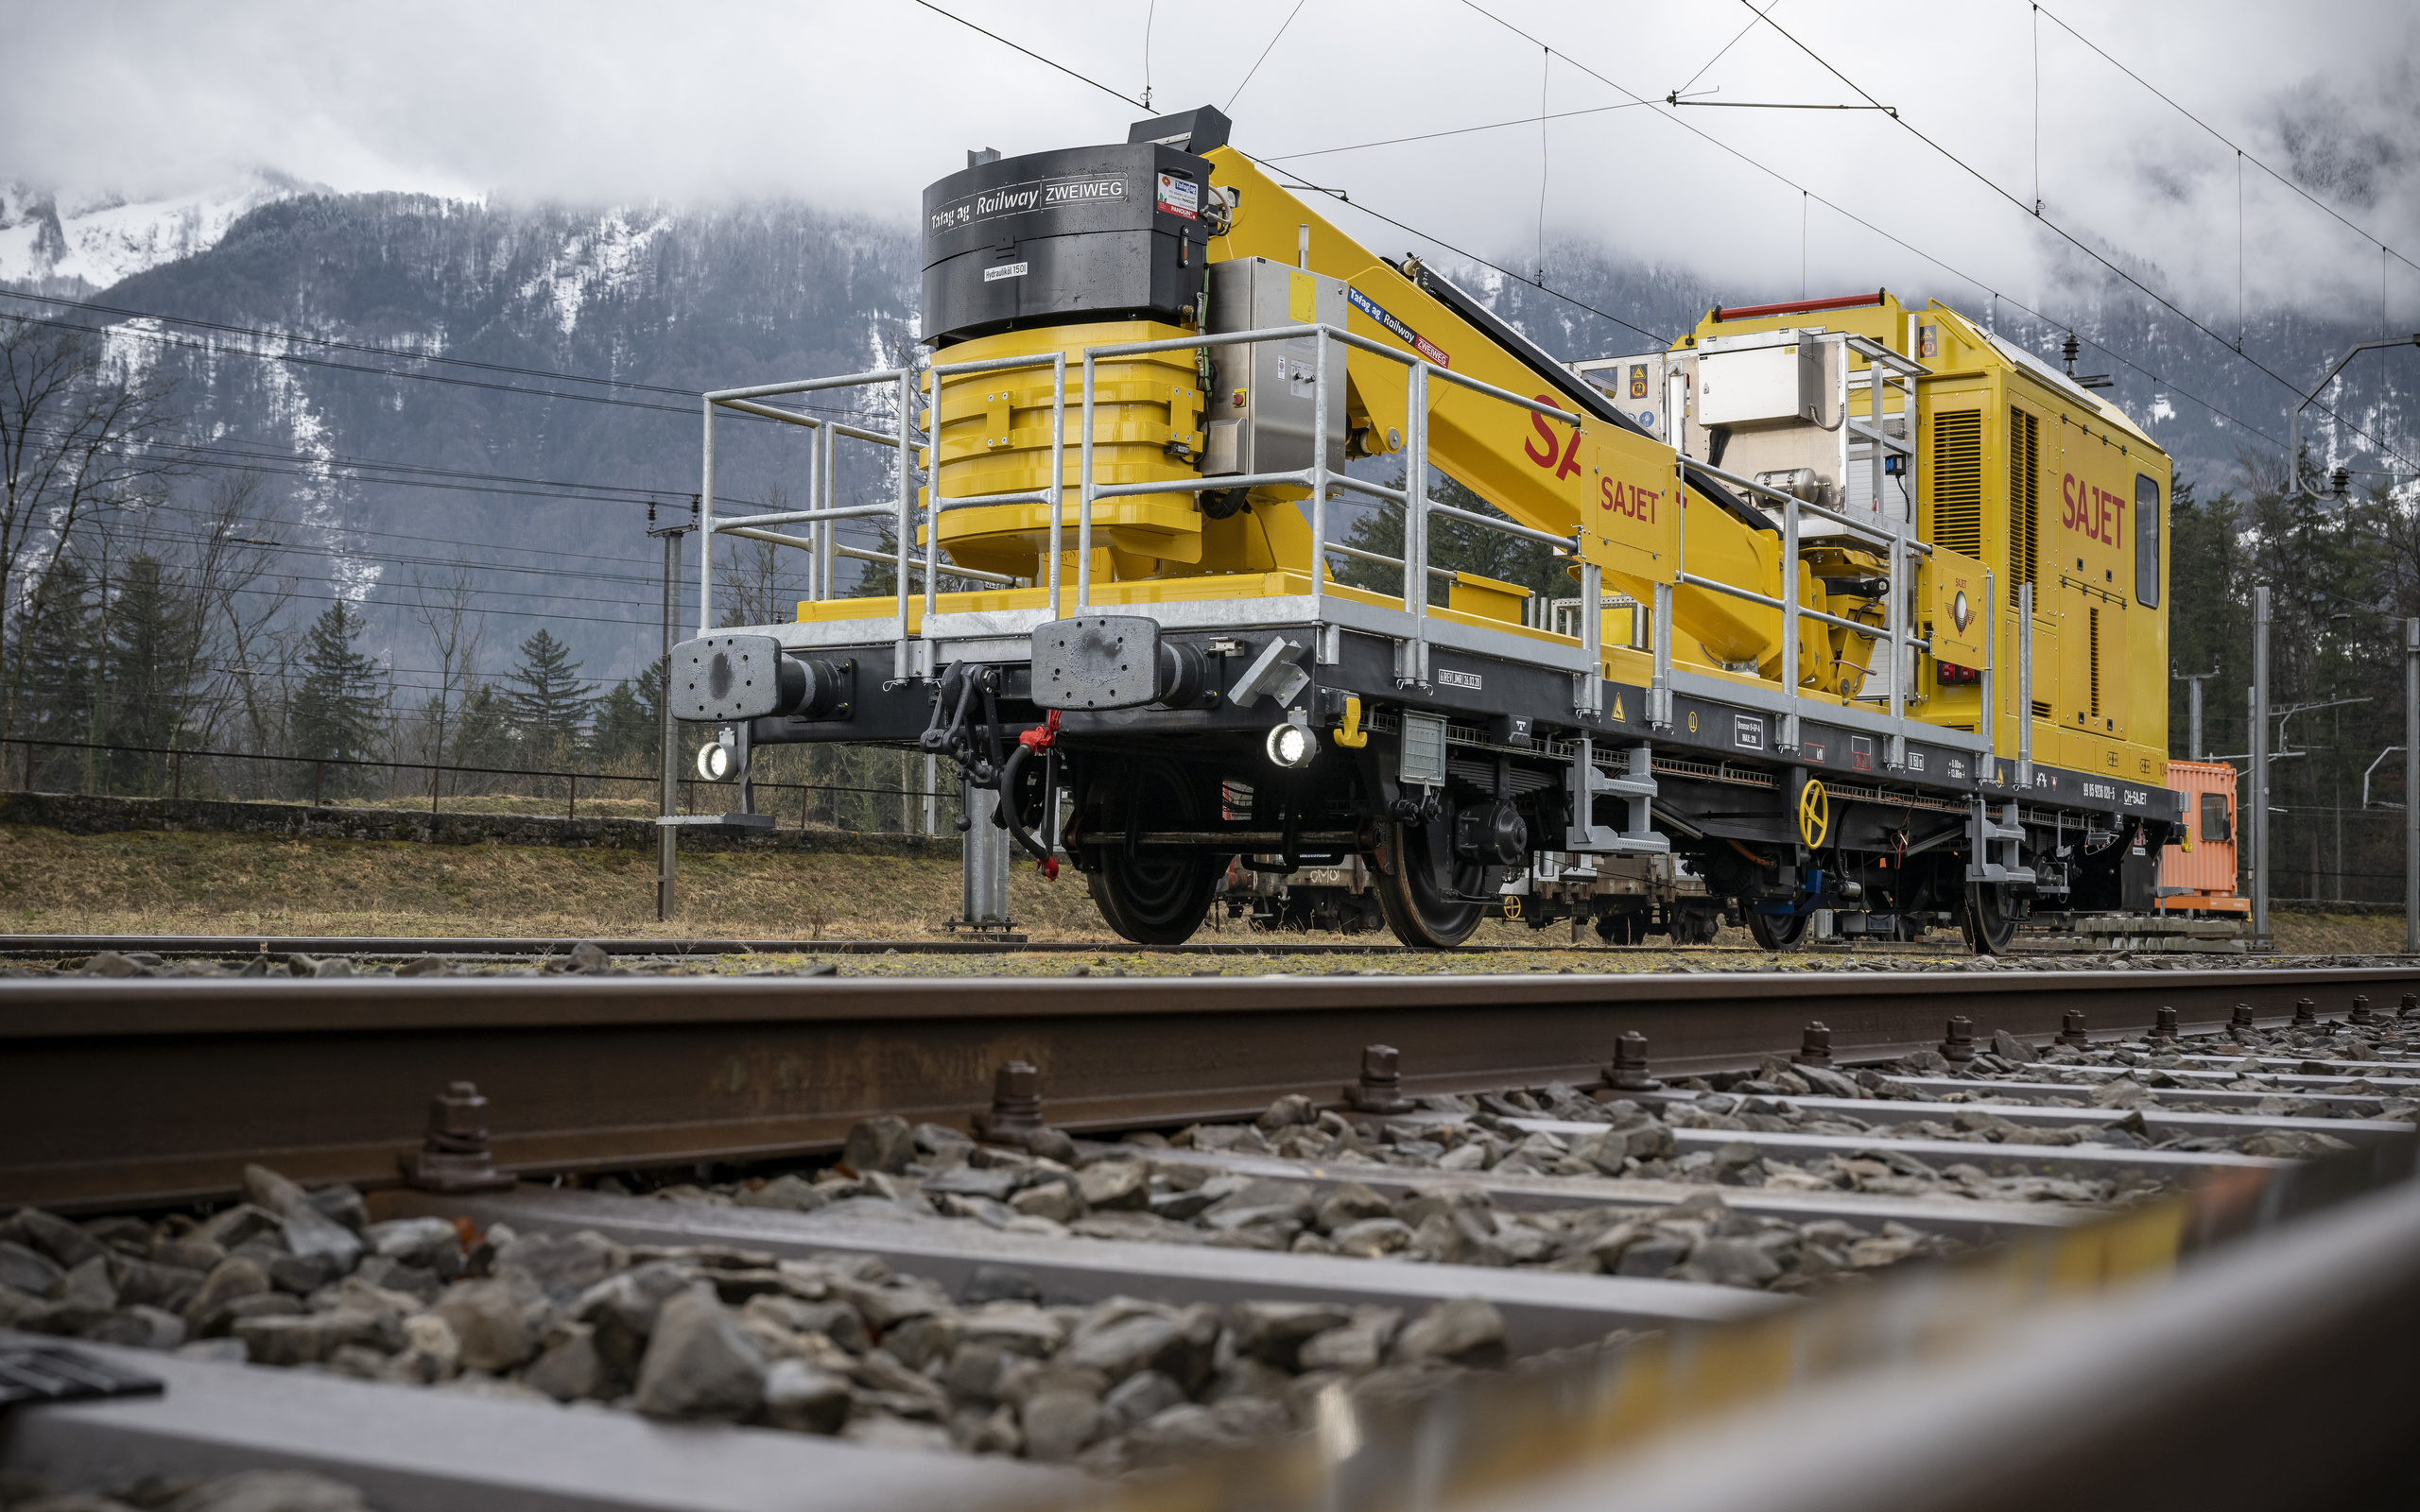 siemens, special maintenance train, switzerland